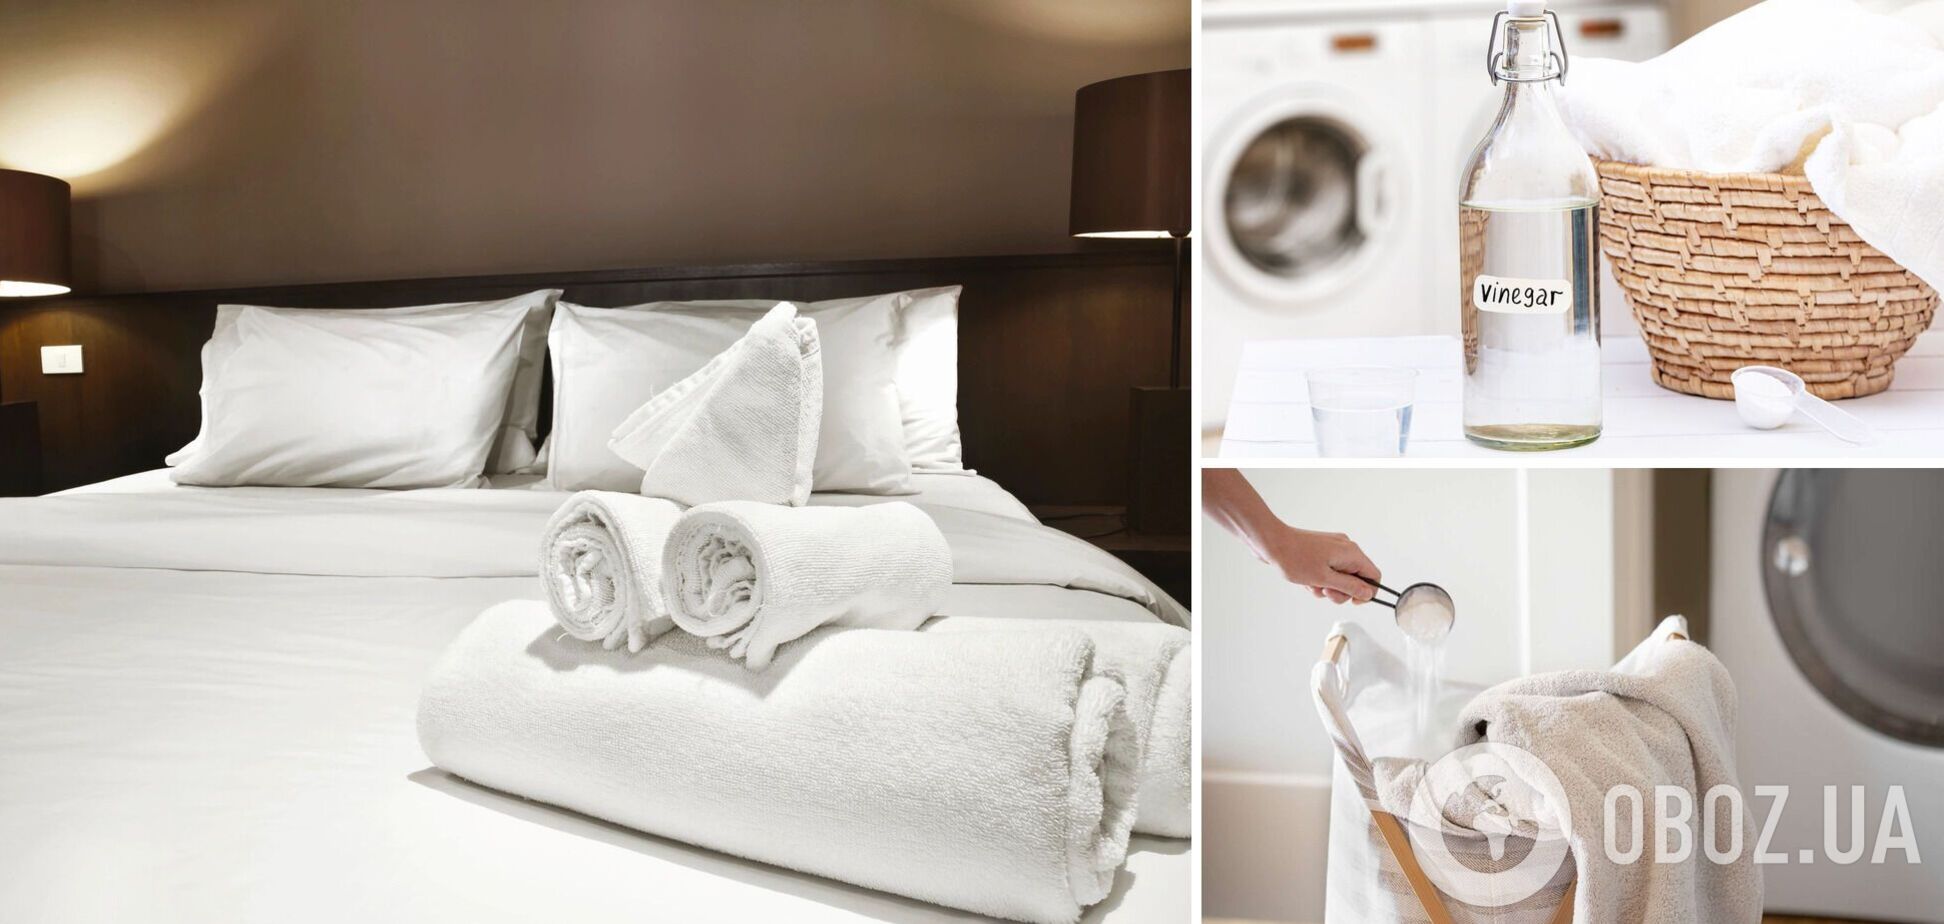 Как стирать постельное белье, чтобы оно было мягким и пахло, как в отеле: лайфхаки